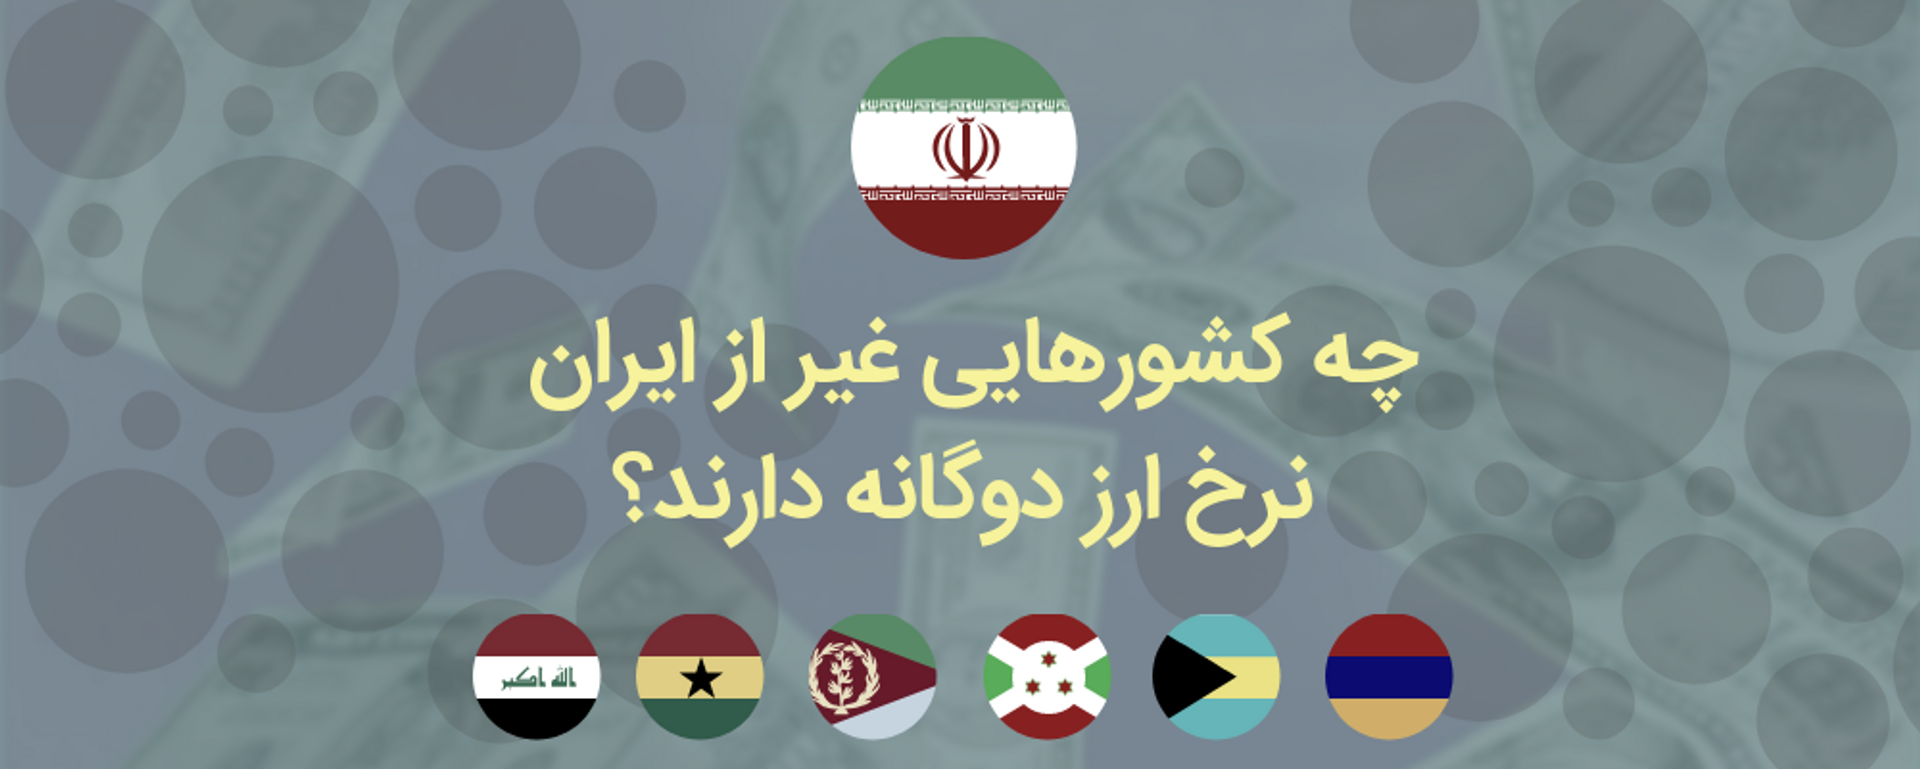 چه کشورهایی غیر از ایران نرخ ارز دوگانه دارند؟ + داده نمایی - اسپوتنیک ایران  , 1920, 01.12.2021